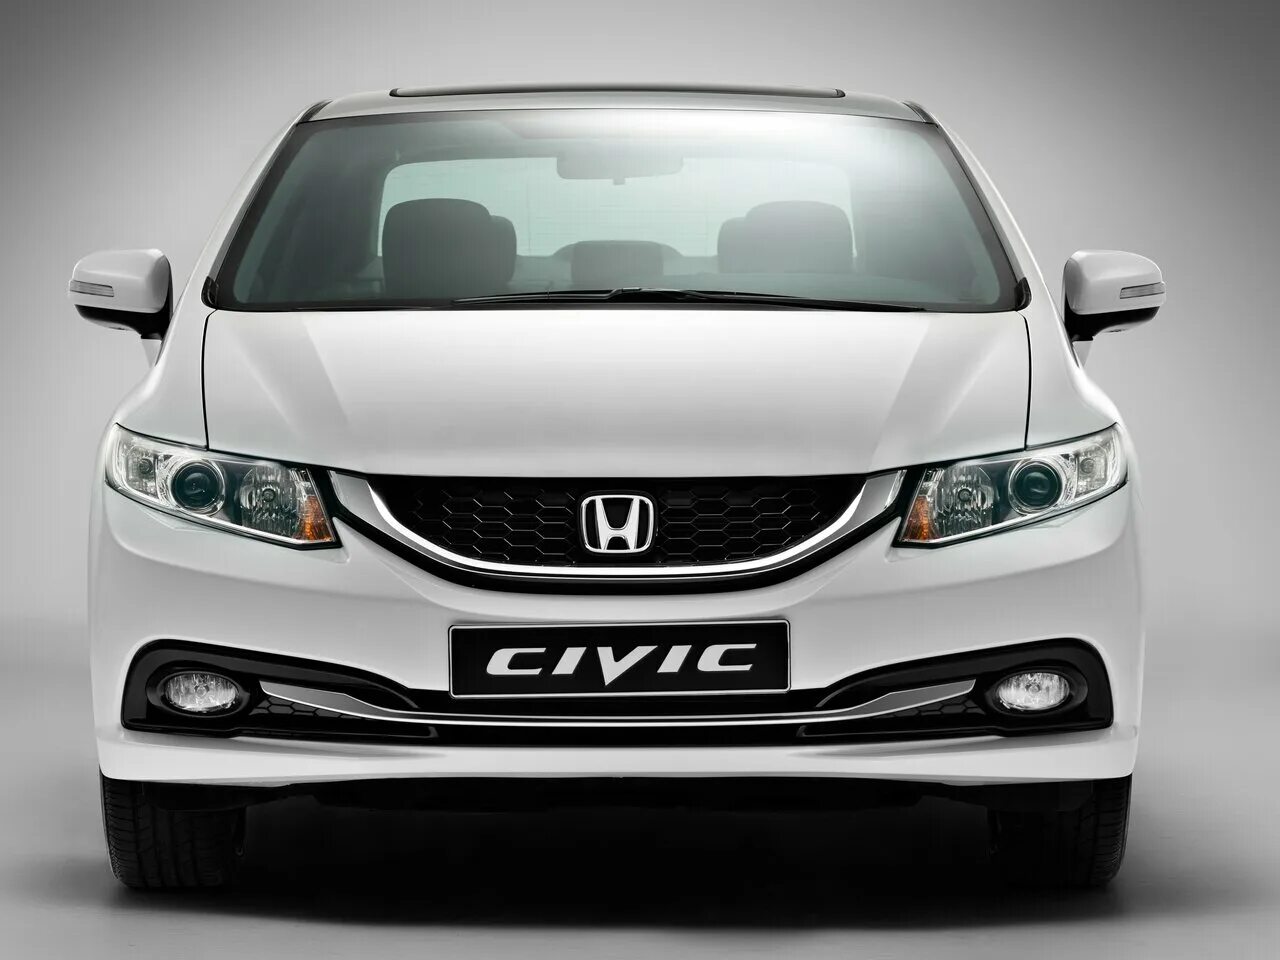 Honda Civic 2013 седан. Honda Civic 4d 2014. Honda Civic 4d 2015. Honda Civic 2014 седан.